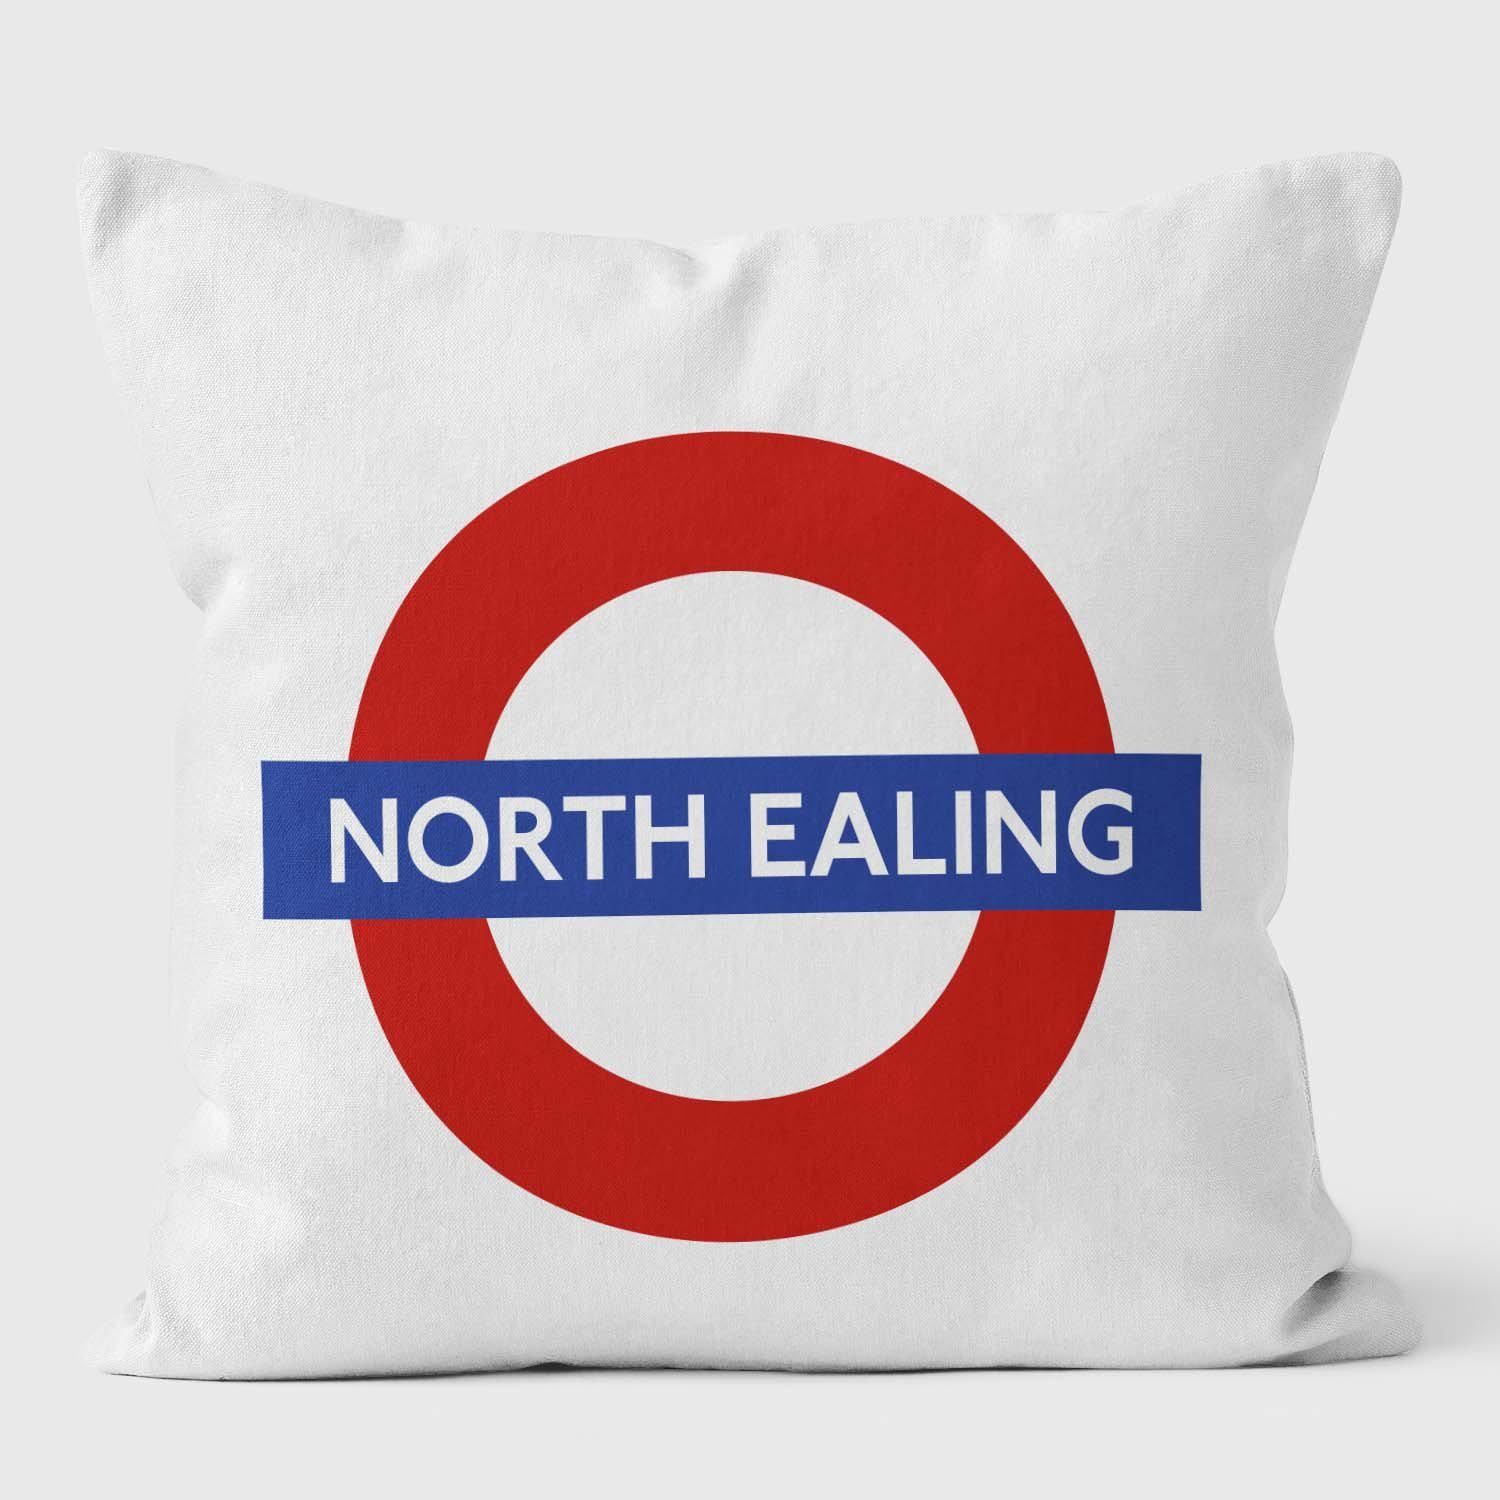 North Ealing London Underground Tube Station Roundel Cushion - Handmade Cushions UK - WeLoveCushions